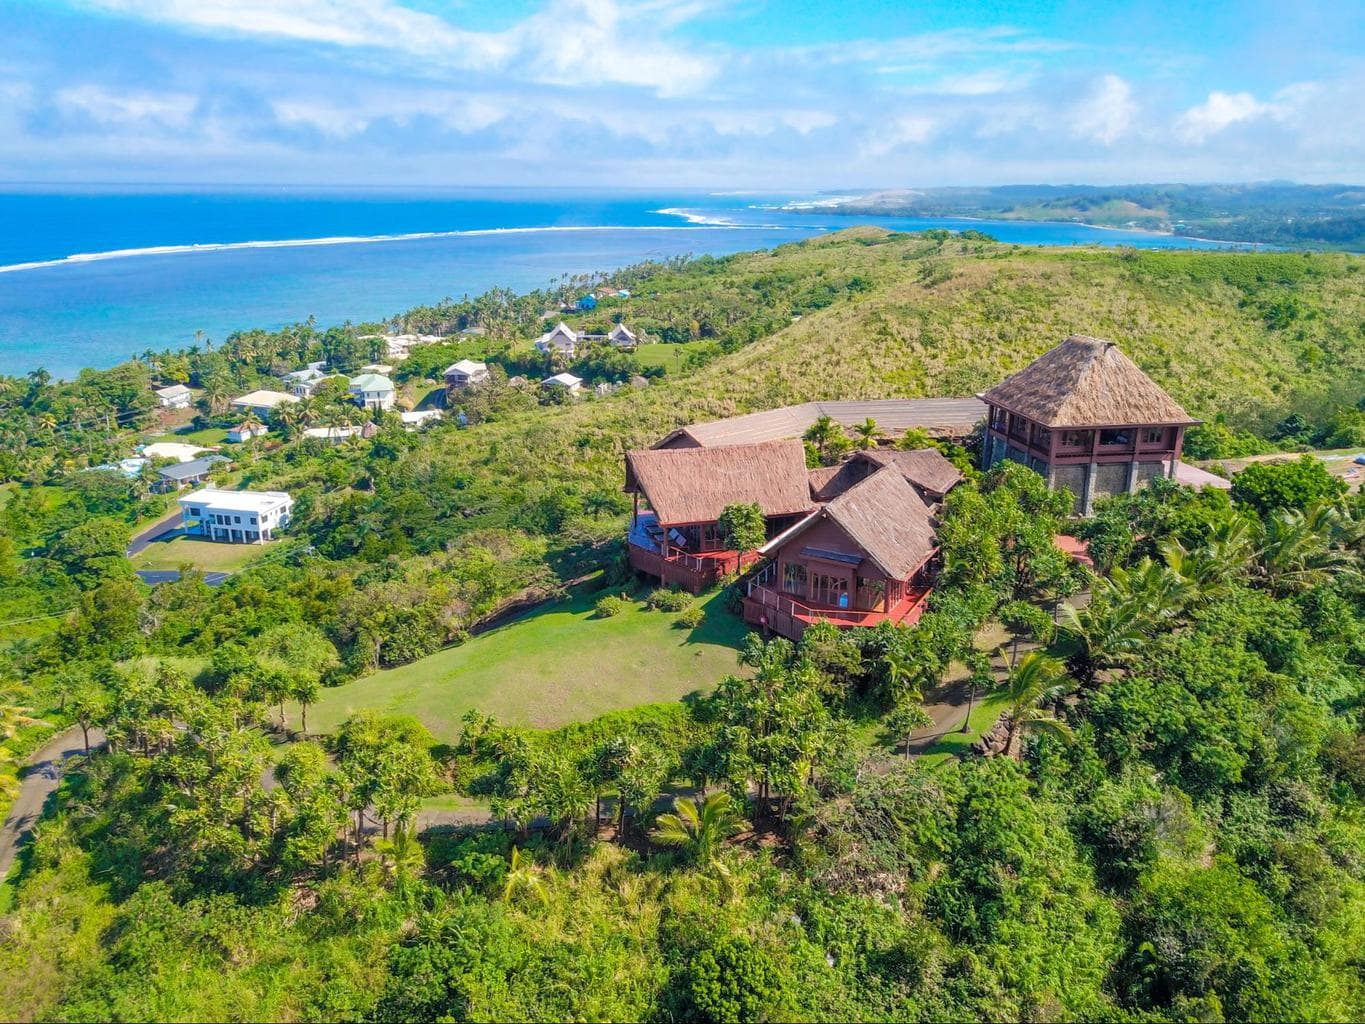 The Bebe Spa at Outrigger Fiji Beach Resort